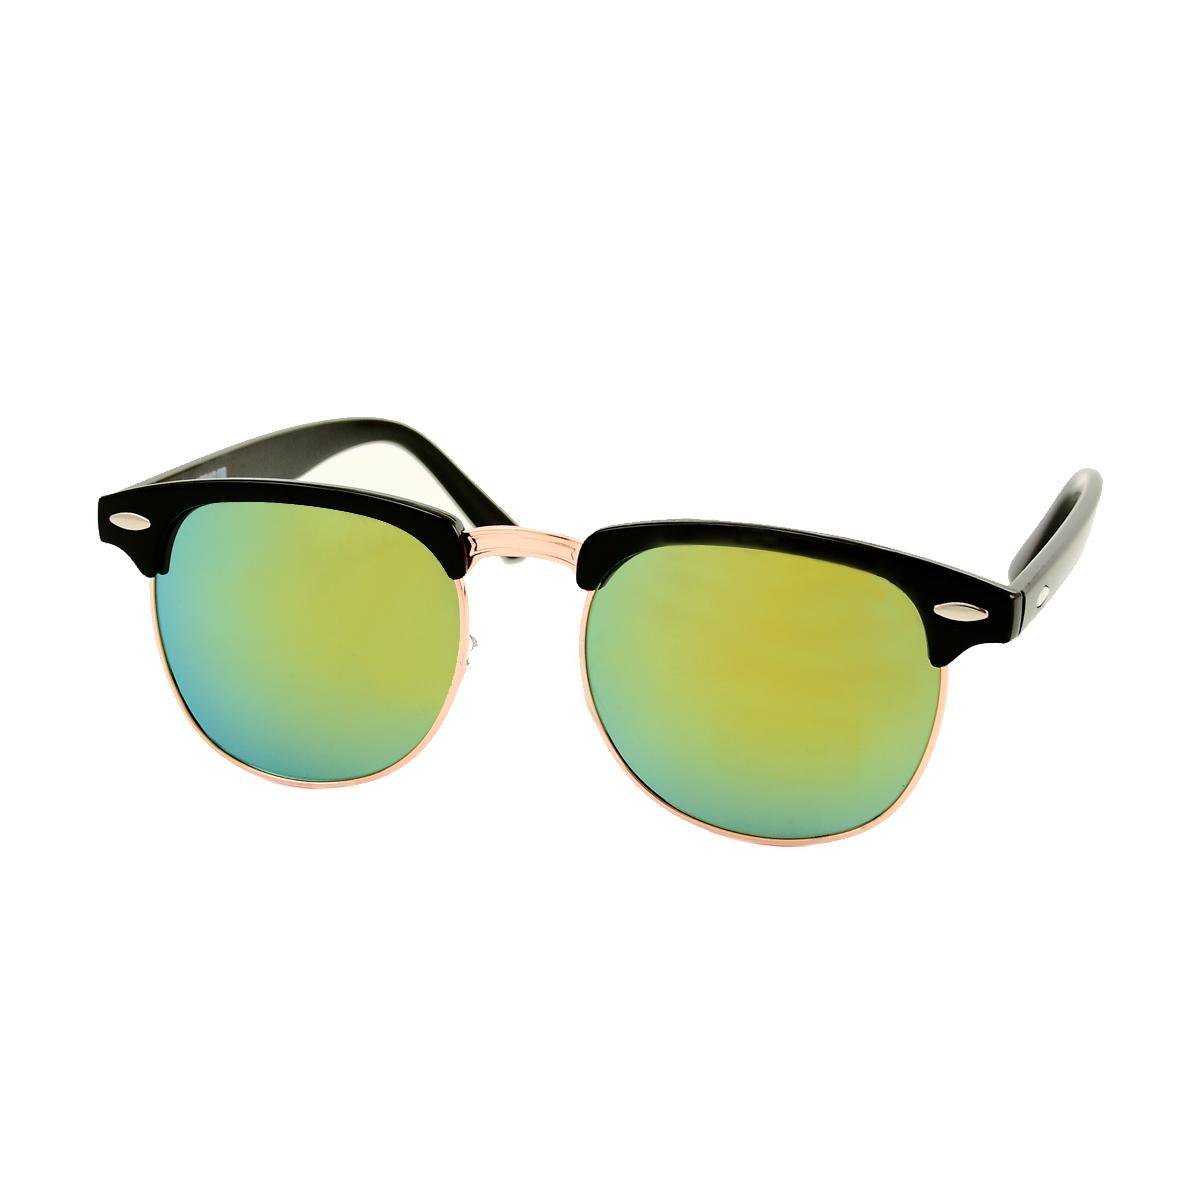 Heren Zonnebril - Dames Zonnebril - Ovaal - Zwart - Geel Groen Spiegelglazen - UV400